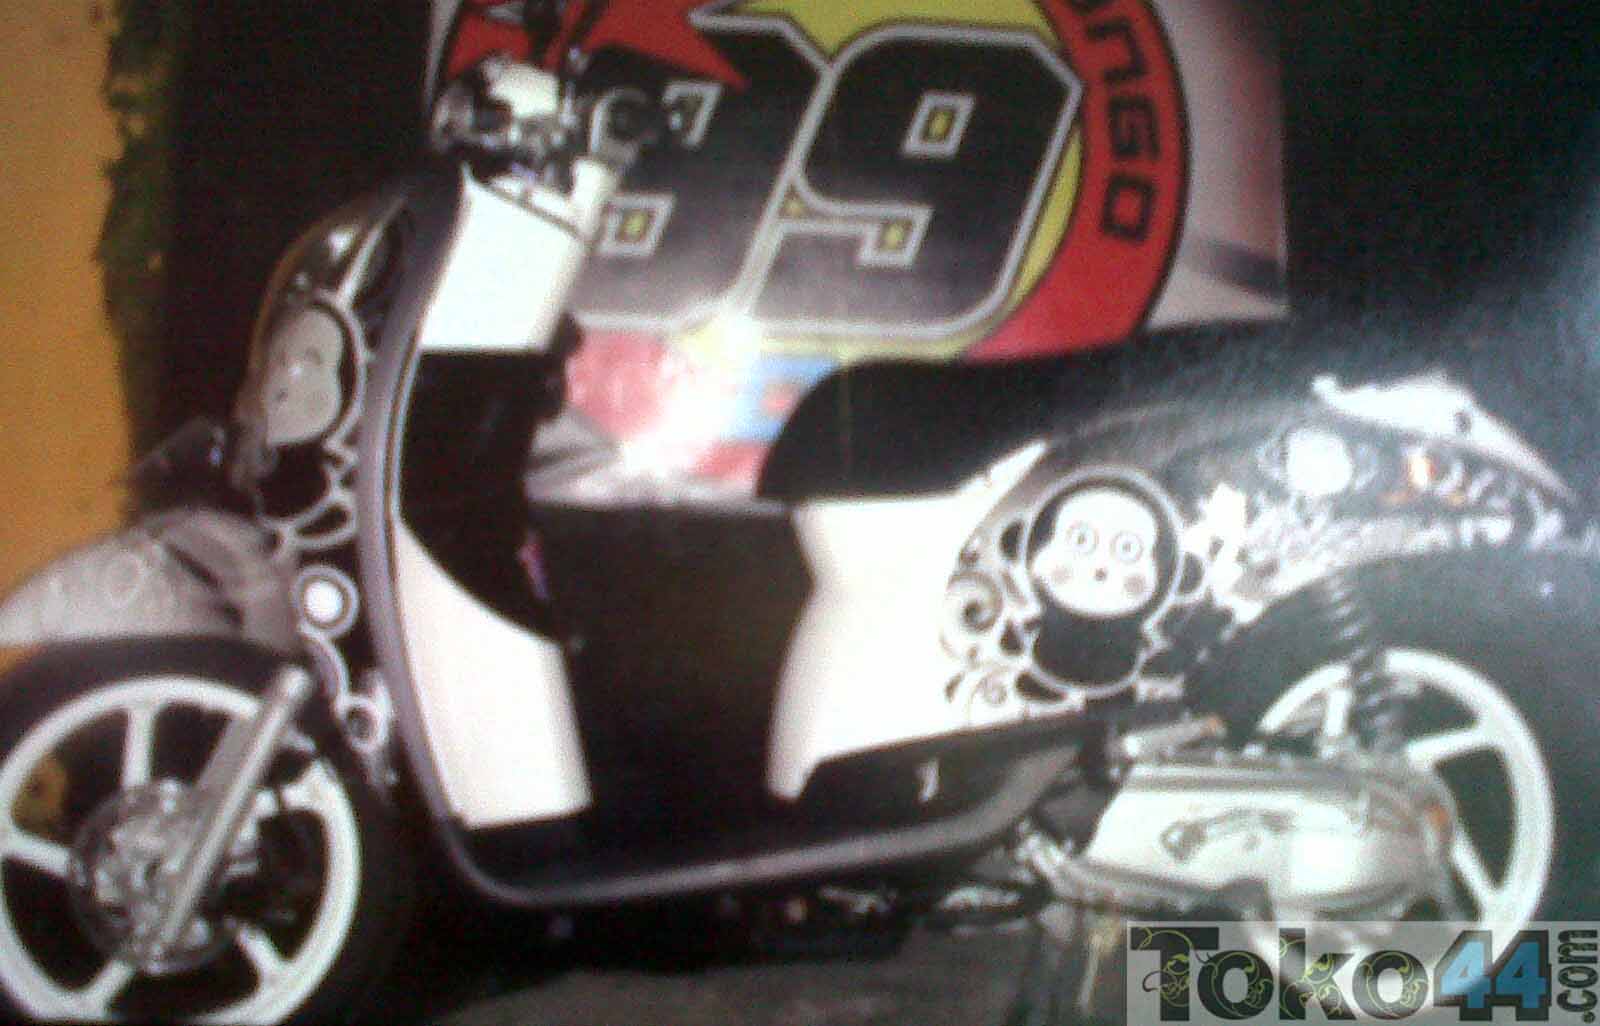 ... Desain Stiker Motor Kawasaki Ninja 250 Desain Stiker Motor Satria Fu